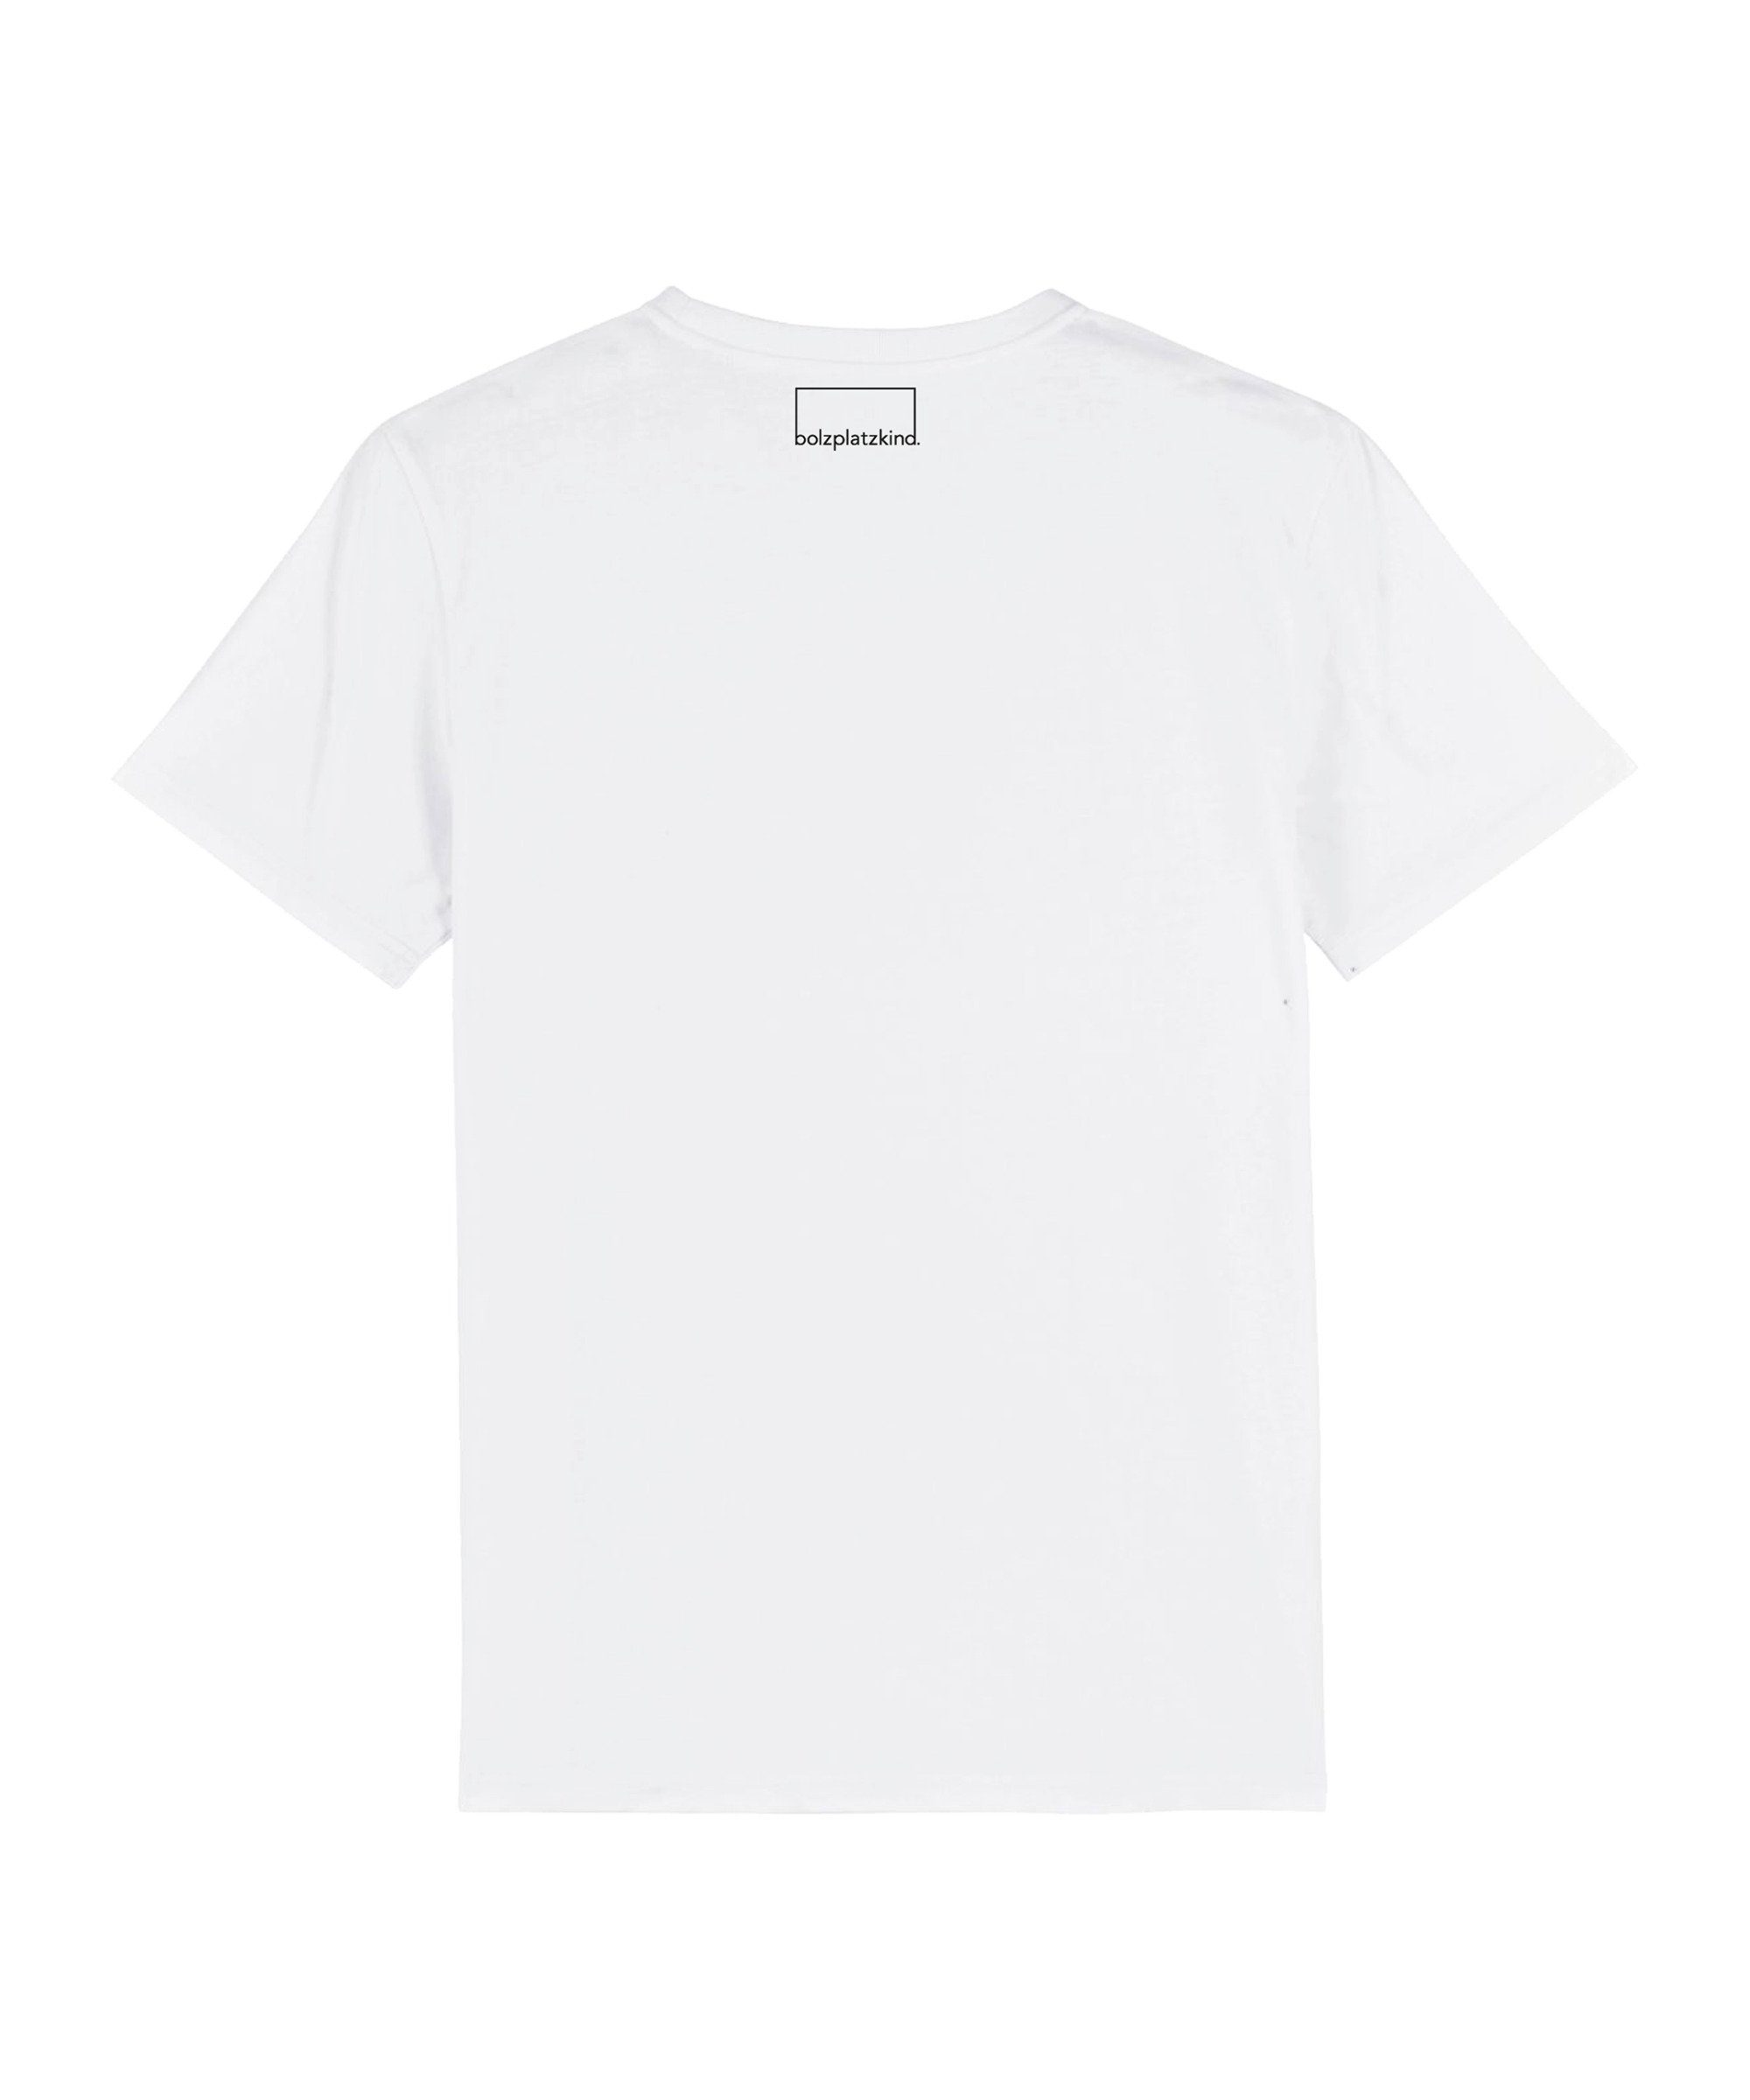 T-Shirt weiss "Sundowner" Nachhaltiges Produkt T-Shirt Bolzplatzkind